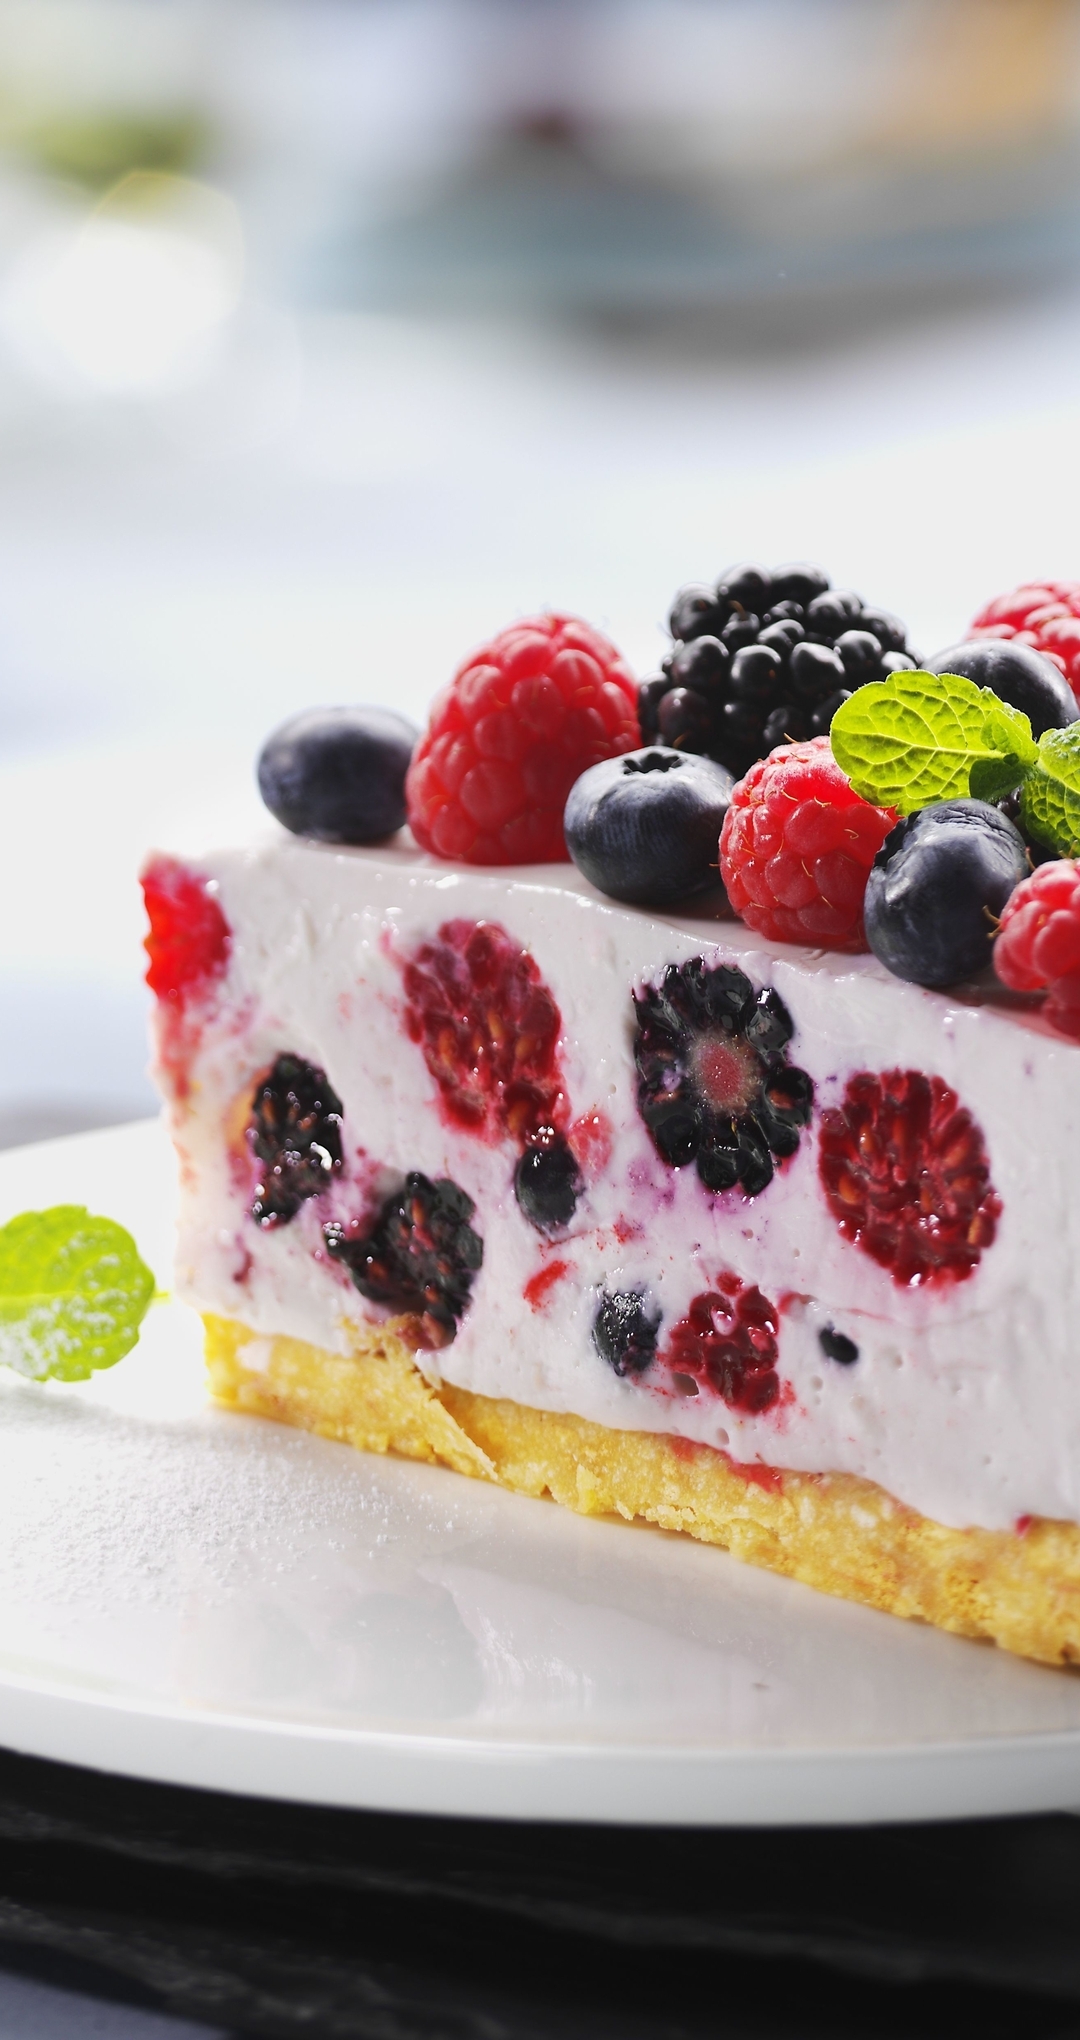 Image: Cake, berries, raspberries, blackberries, blueberries, slice, leaves, fork, plate